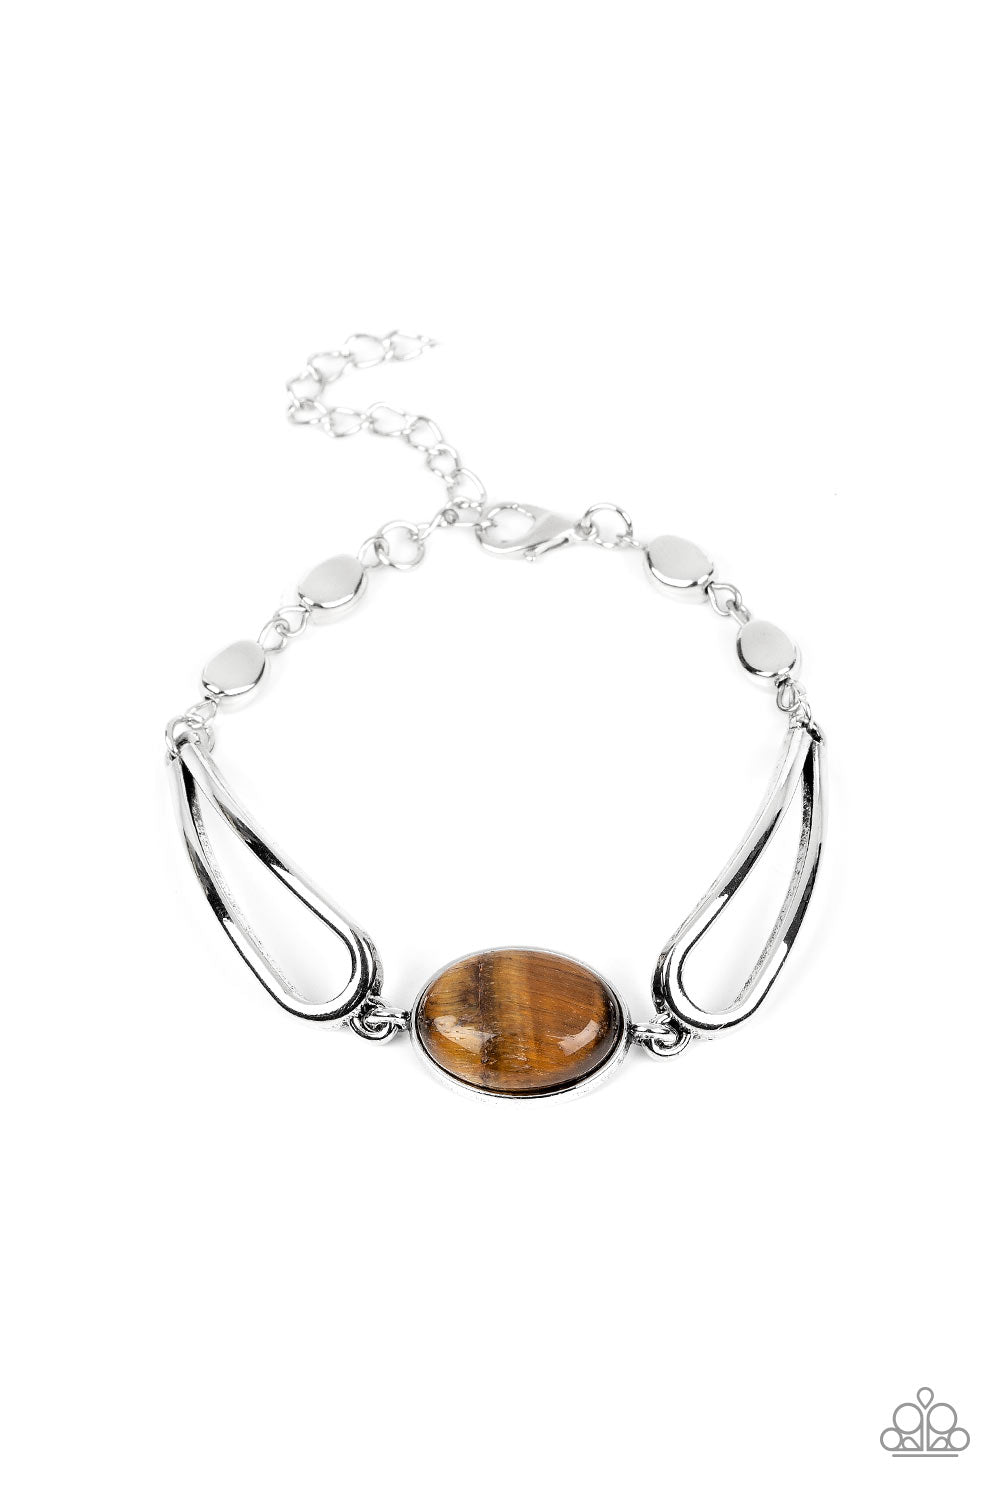 Washer Latitude Longitude Bracelet - Adjustable Leather Bracelet - Nadin  Art Design - Personalized Jewelry